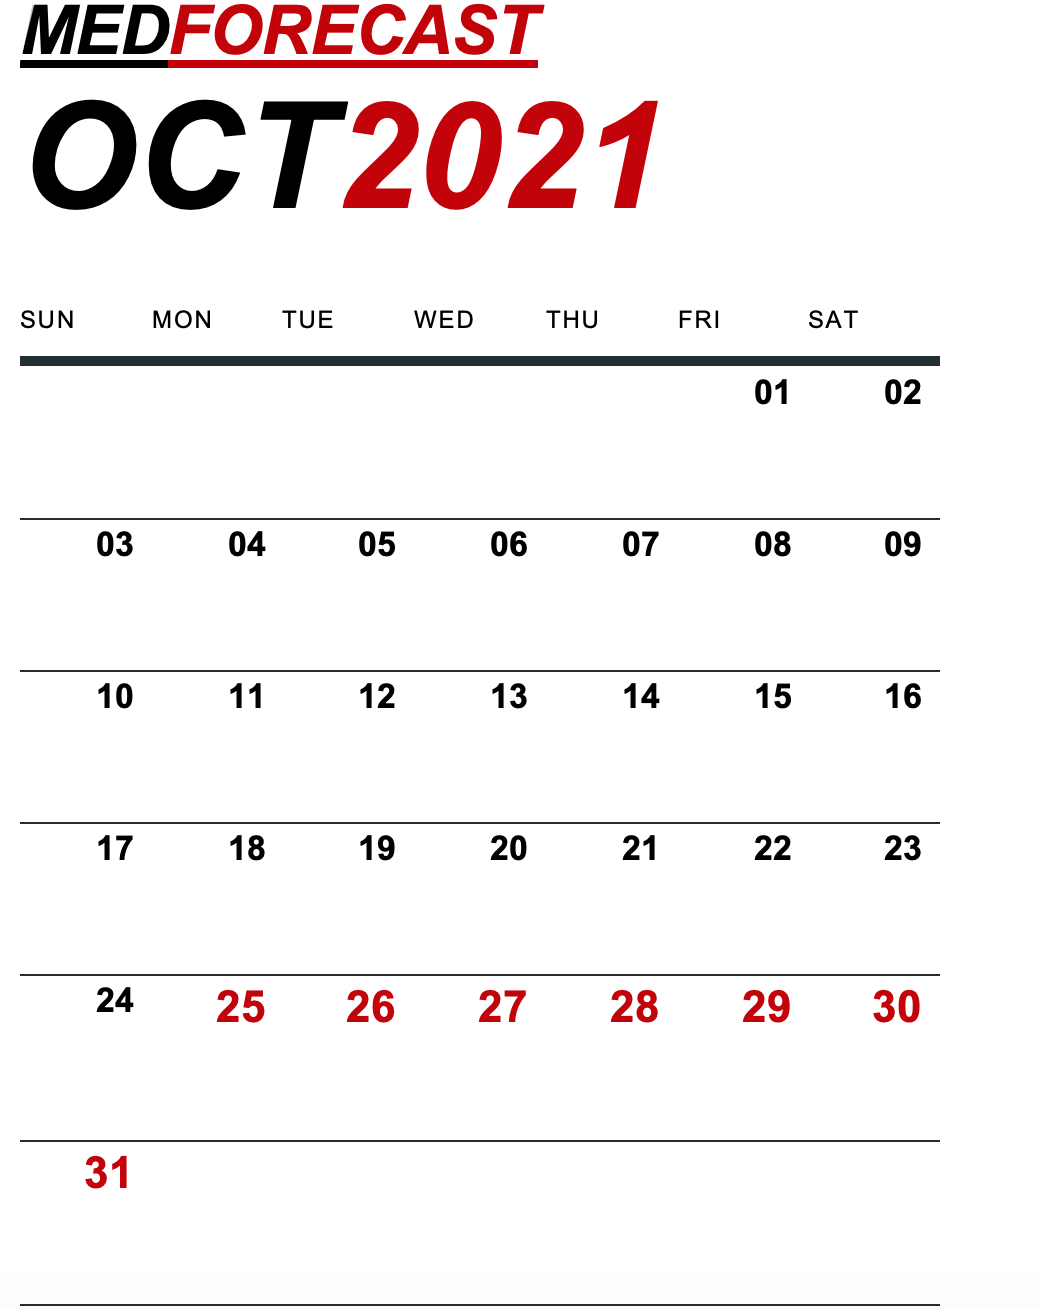 Medical News Forecast for October 25-31